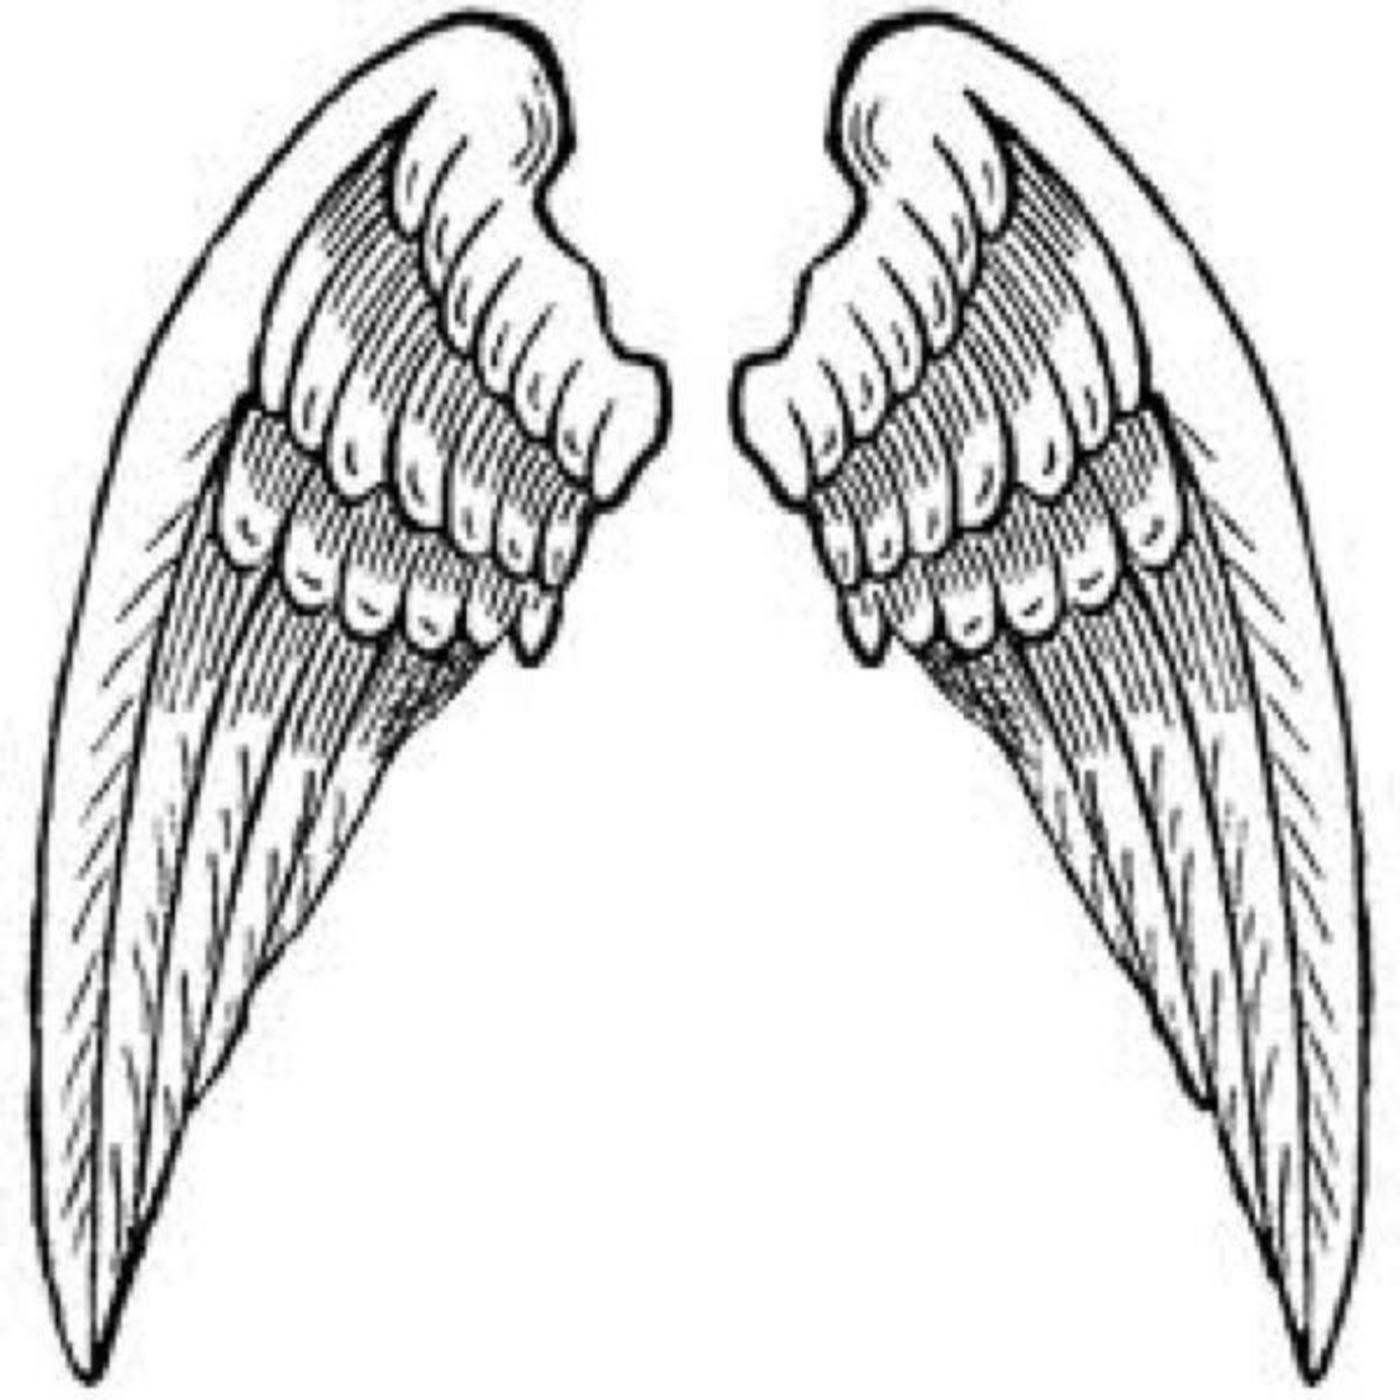 2. Структура крыльев с перьями